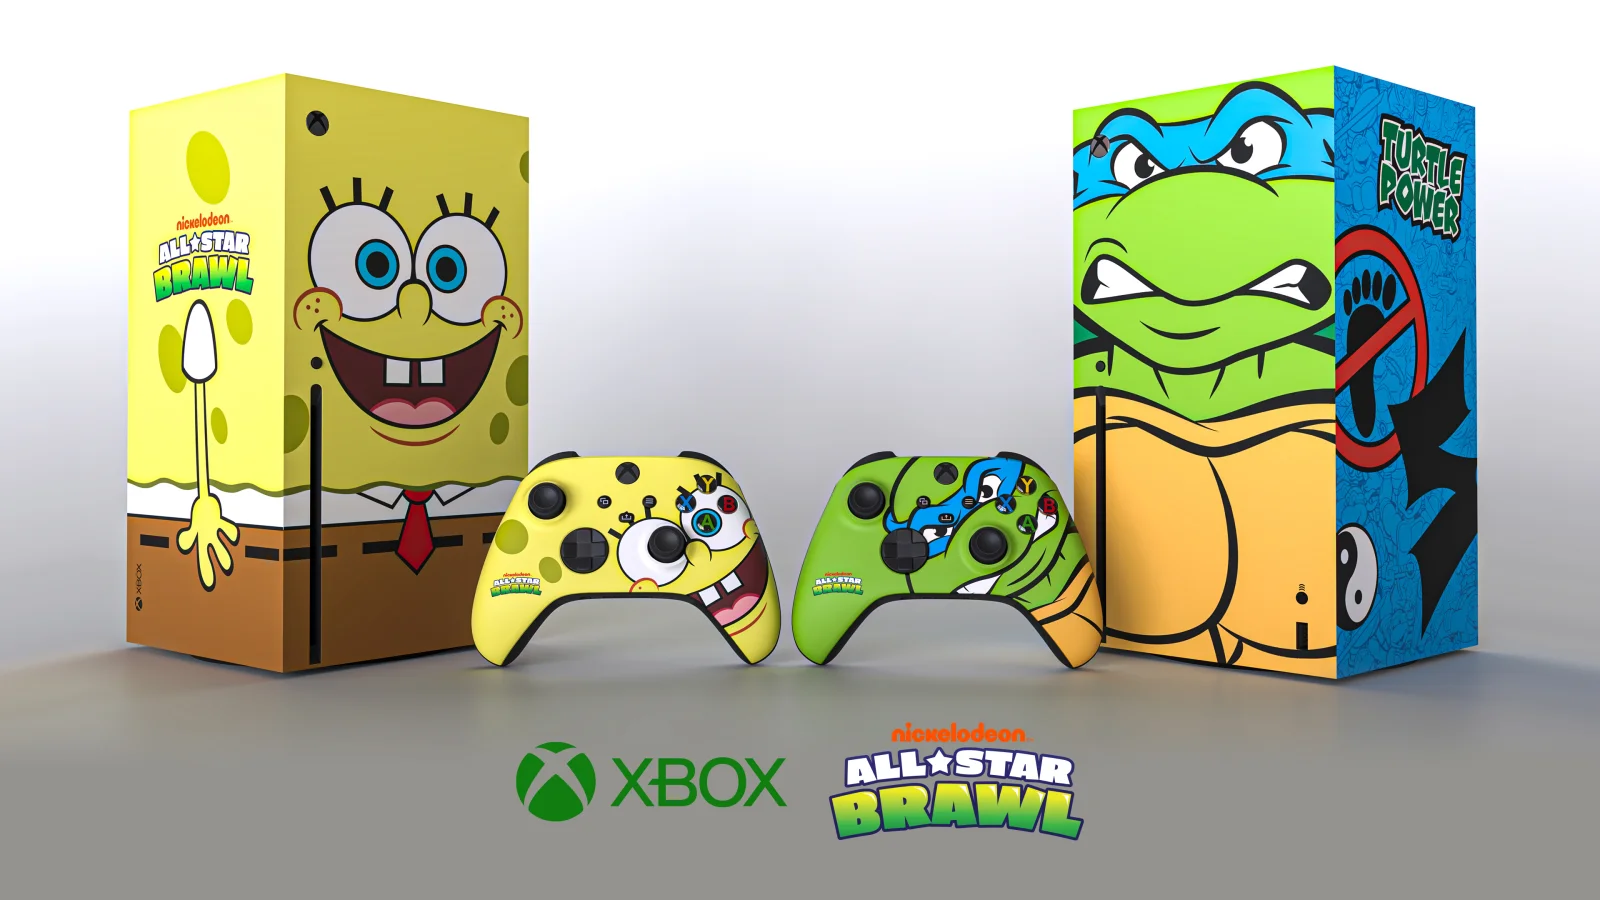 《尼克儿童频道全明星大乱斗》推出海绵宝宝和忍者神龟版联动Xbox Series X